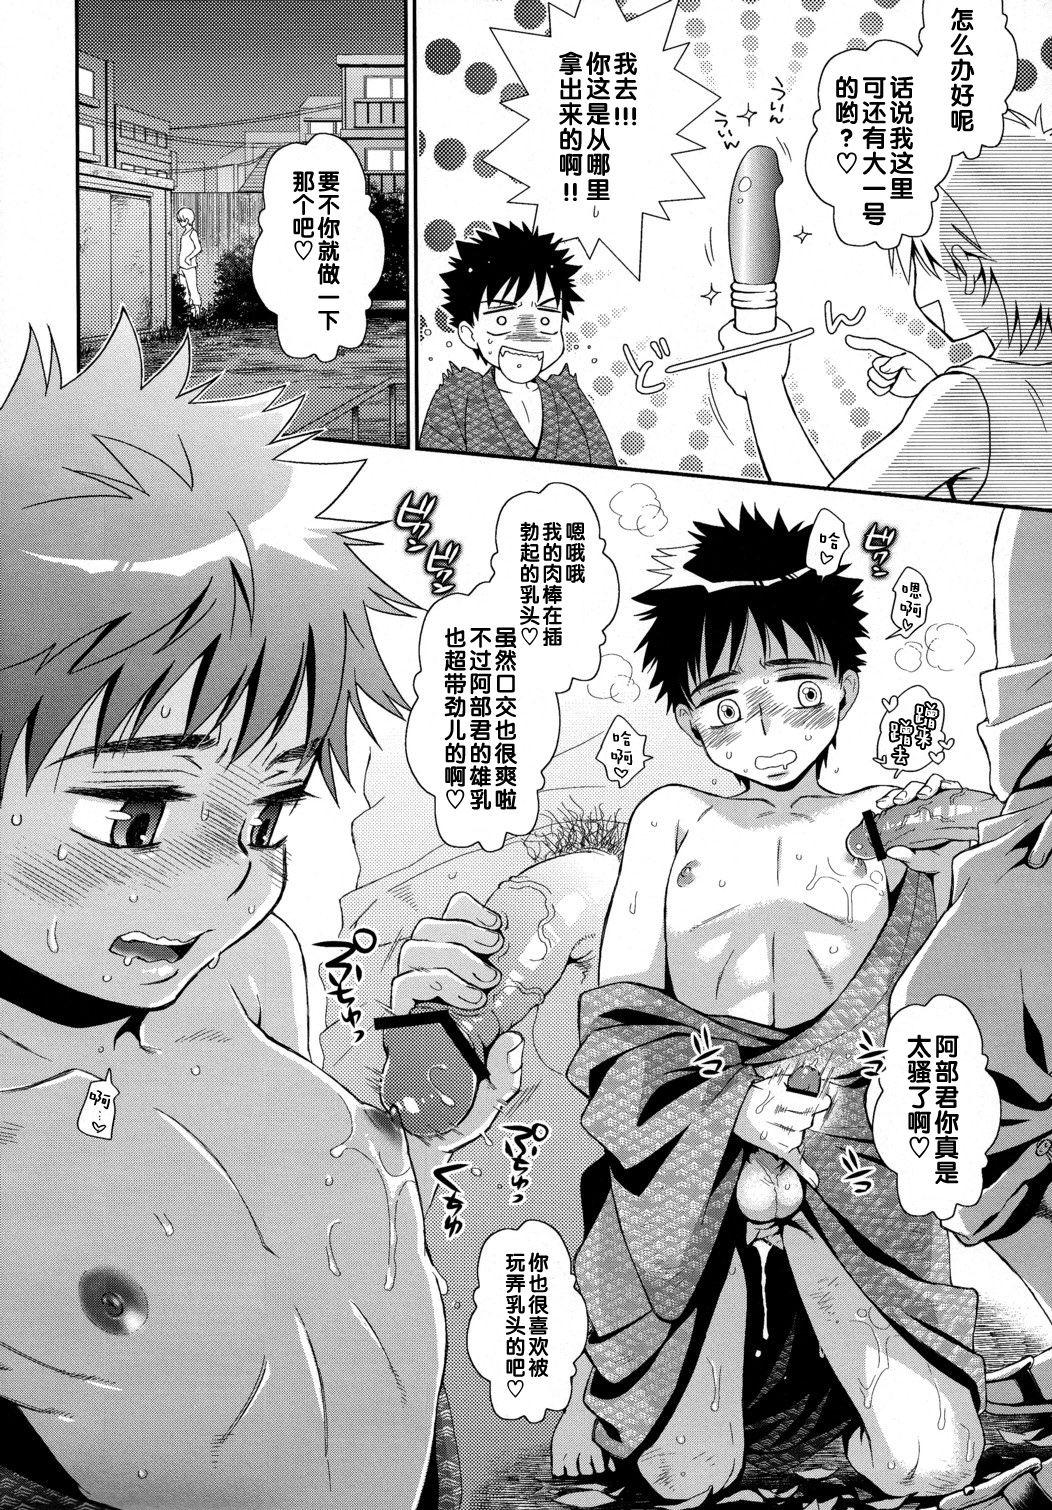 Titten Super Freak Takuya-kun! 3 - Ookiku furikabutte | big windup Penis Sucking - Page 10